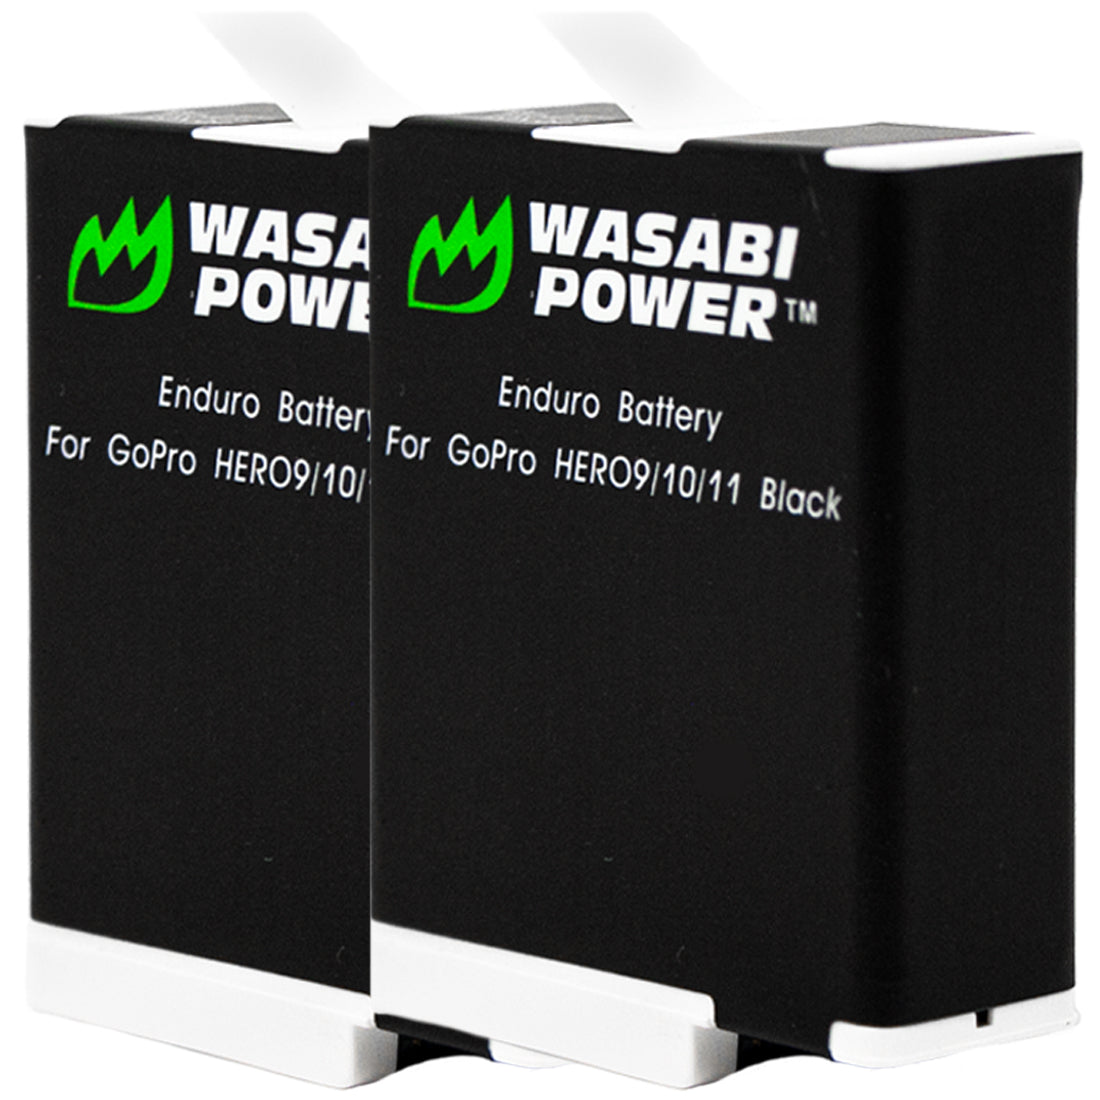 GoPro Enduro Battery – Wasabi HERO11, Power HERO9 by HERO12, Was HERO10, (2-Pack) for